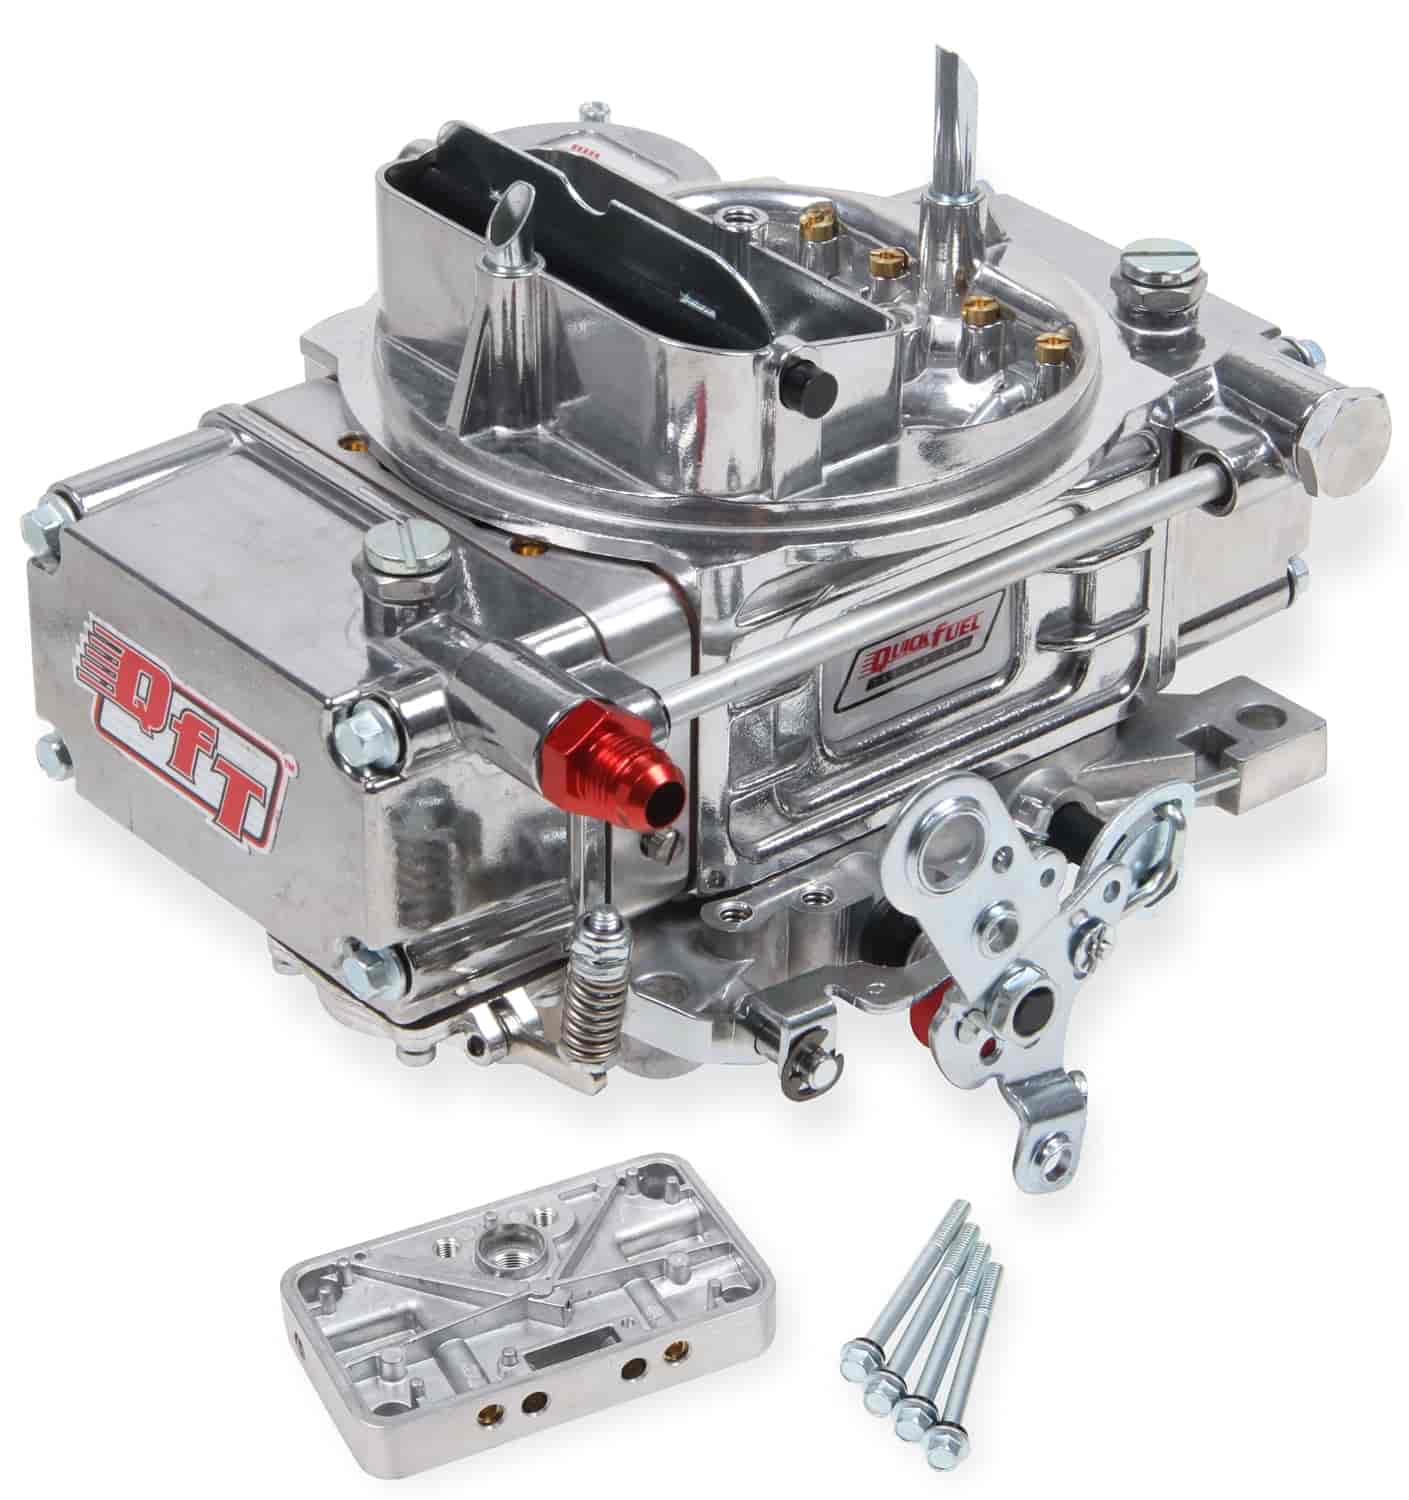 585 CFM 4-bbl SSR Carburetor For Manual Trans or Auto w/ Transbrake at Sea-Level Vacuum Secondary